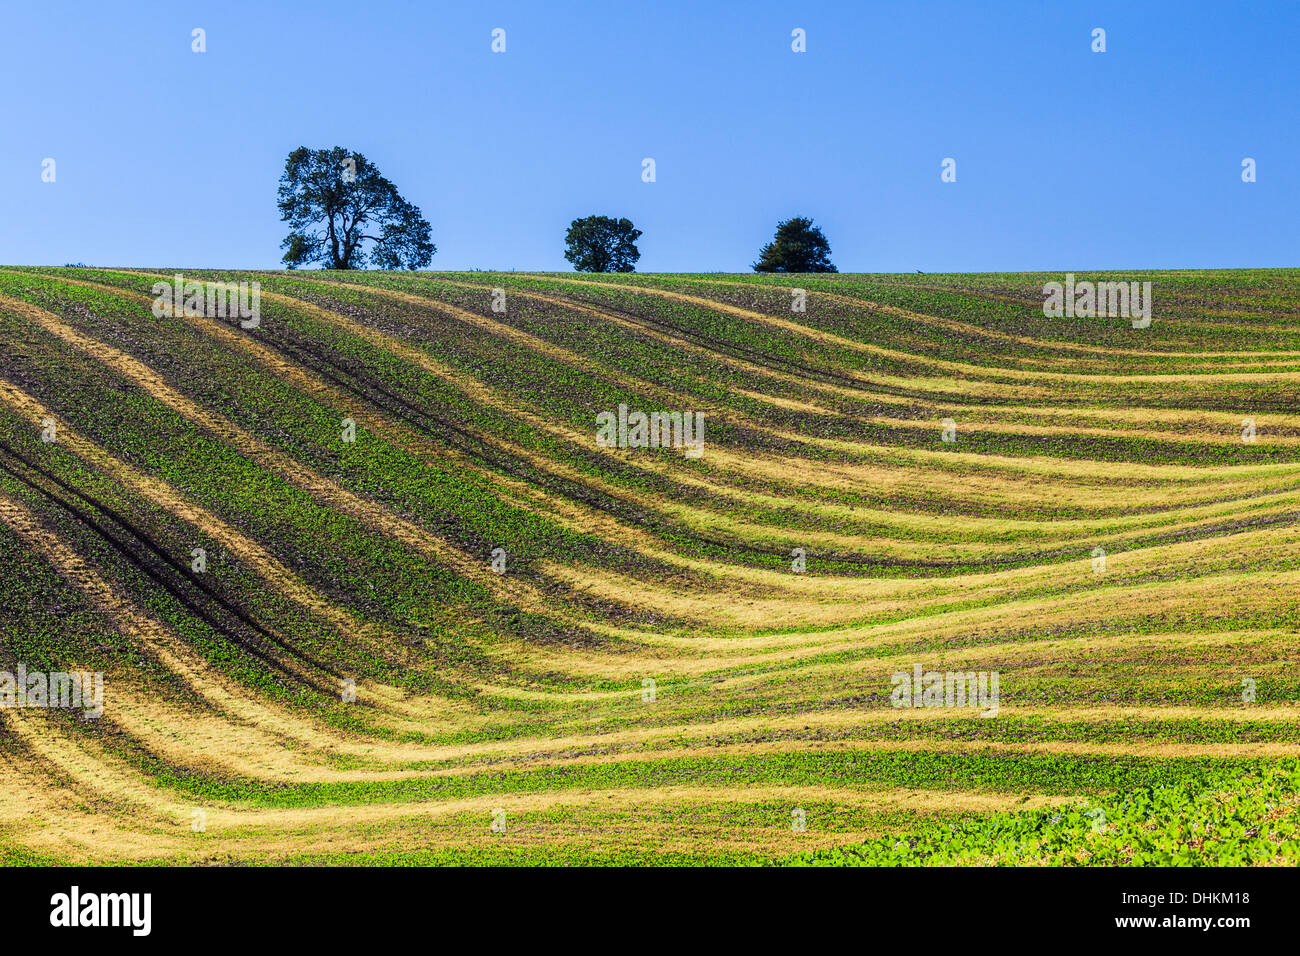 Una imagen simple de ondulantes patrones creados por jóvenes cultivos y surcos de un campo arado en Wiltshire, Inglaterra. Foto de stock